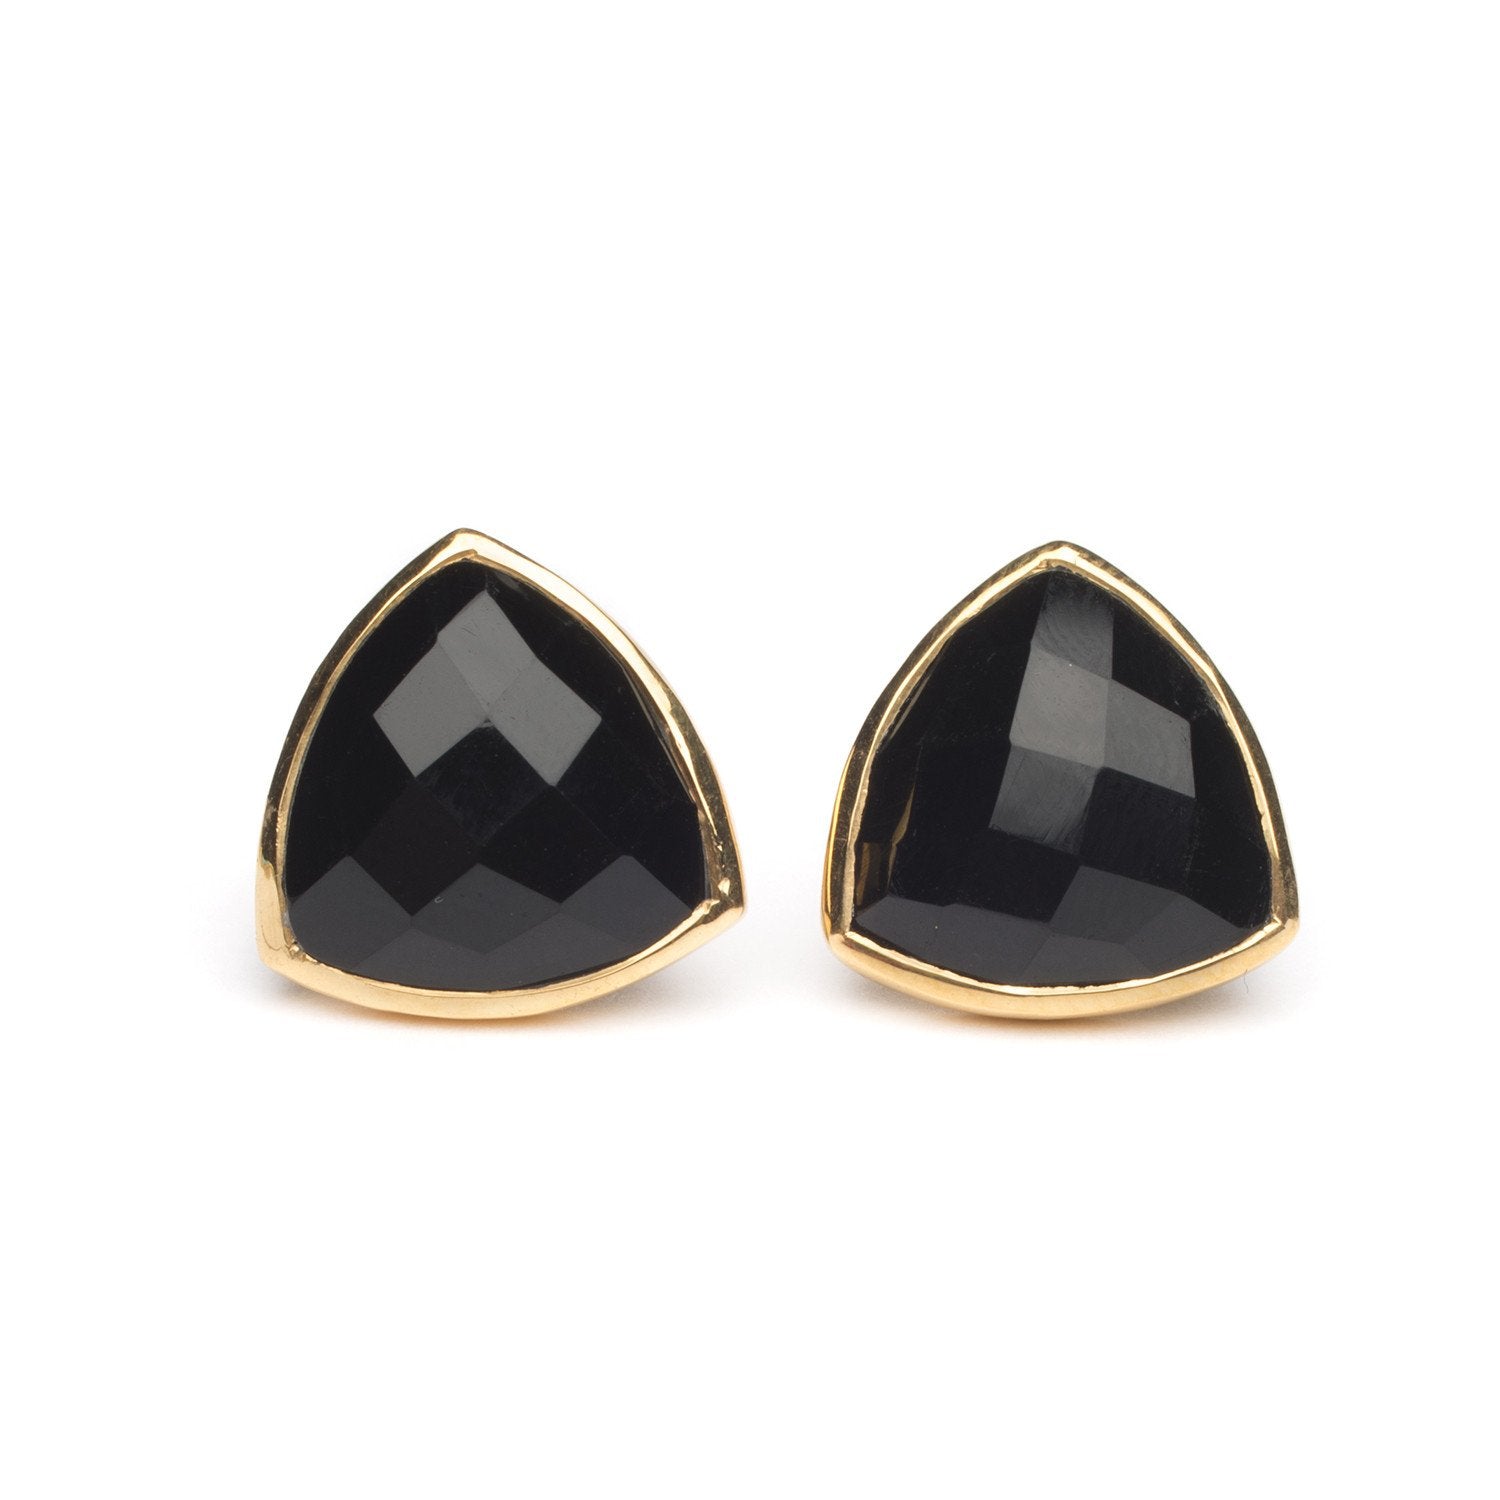 Georgia Earrings in Black Onyx